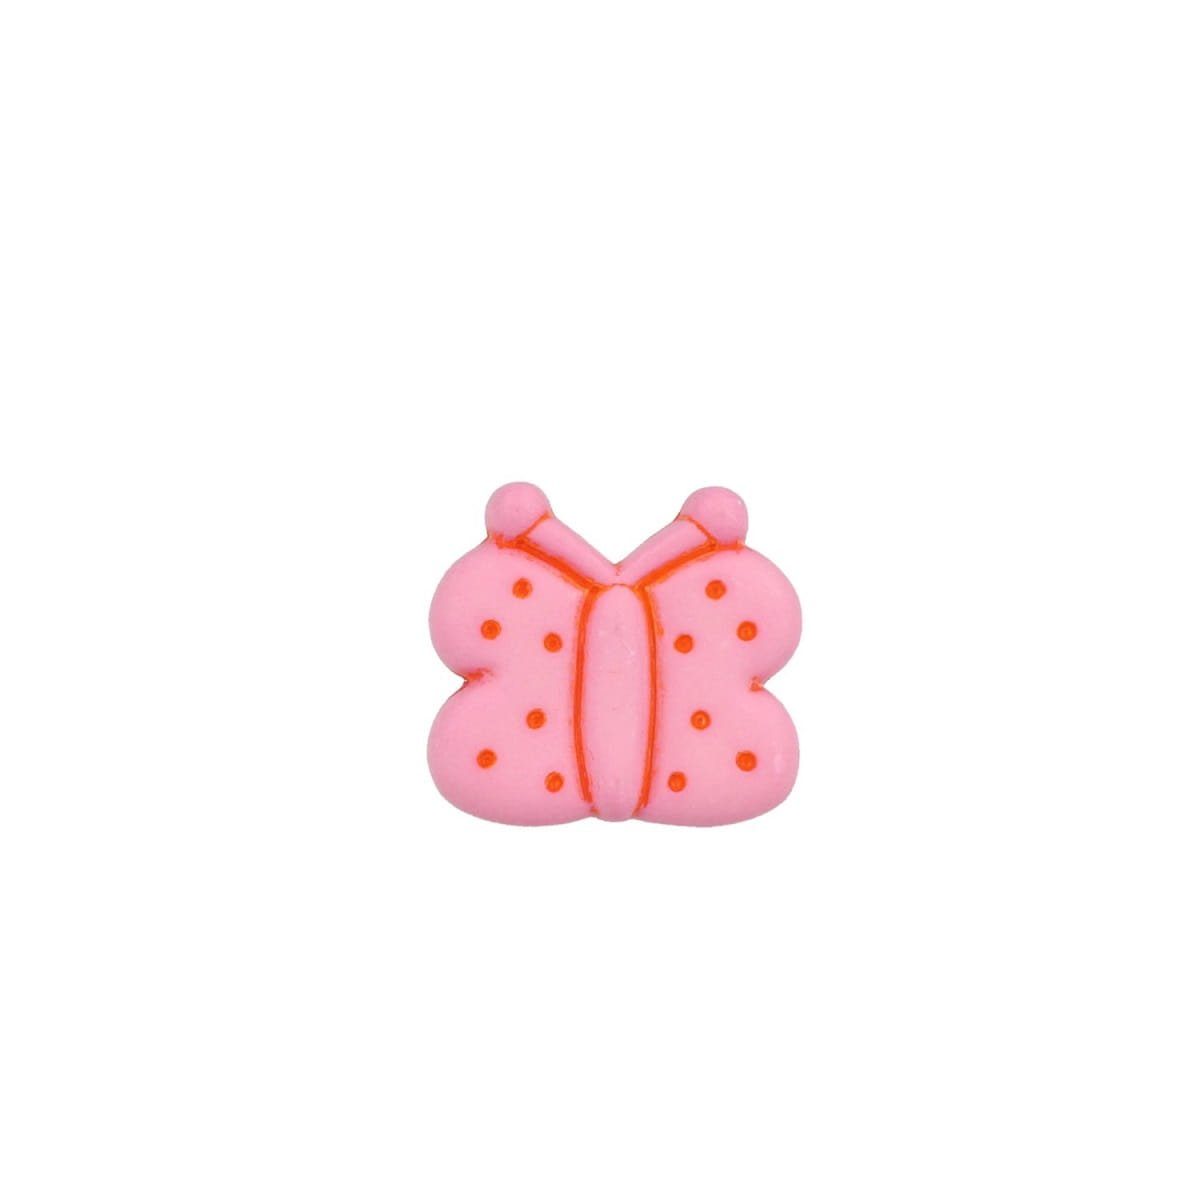 MS Beschläge Möbelbeschlag Möbelknopf Kinderzimmerknopf Schrankknopf Rosa Schmetterling Kommodenk